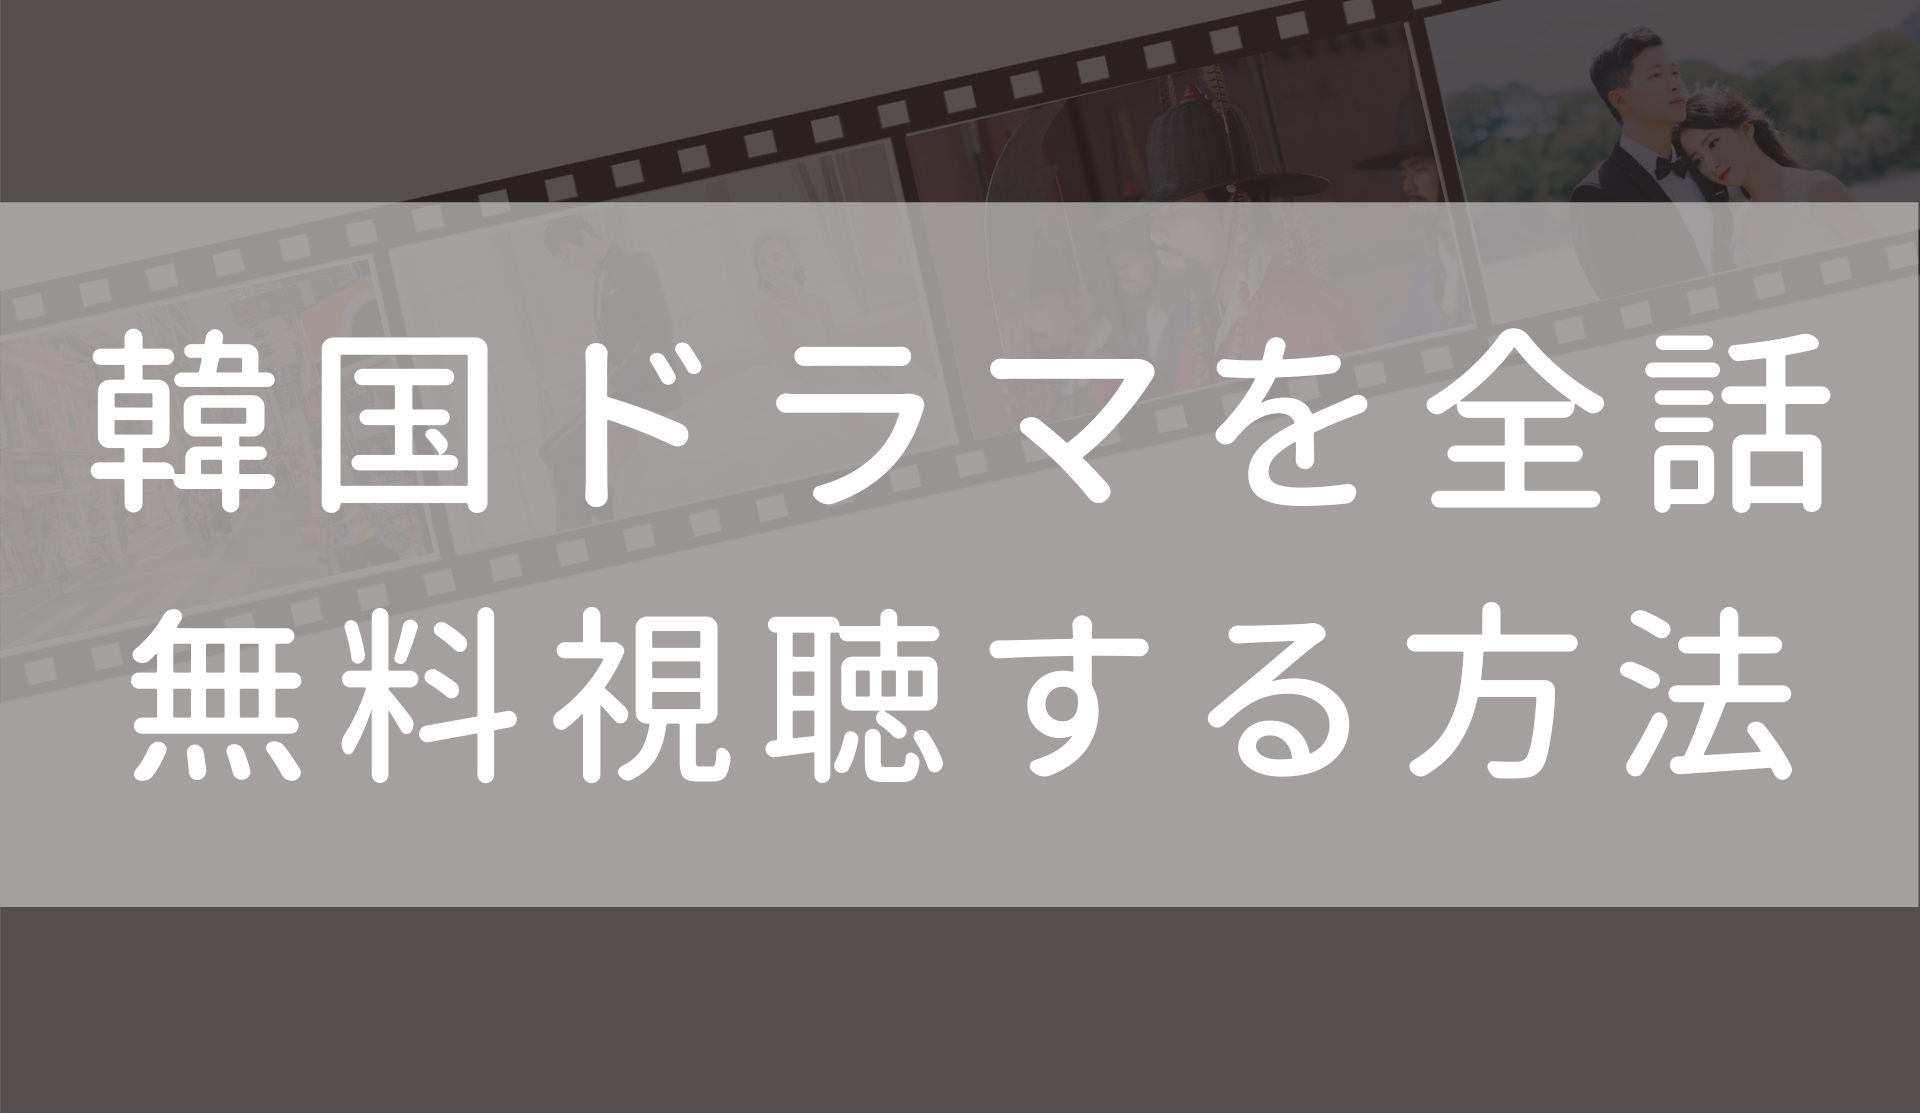 インス大妃 日本語字幕 吹き替え の無料動画 1話 最終回まで全話観る方法も Fuku Hack Times